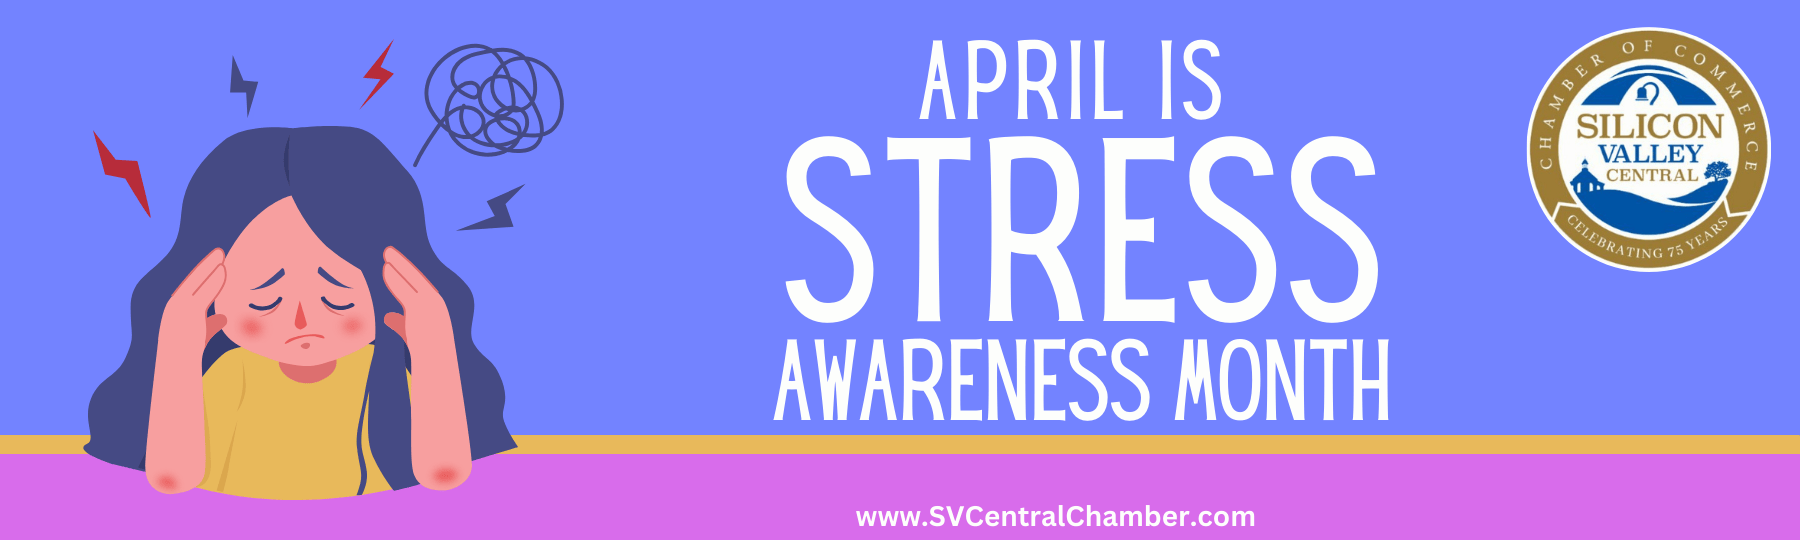 April - Stress Awareness Month